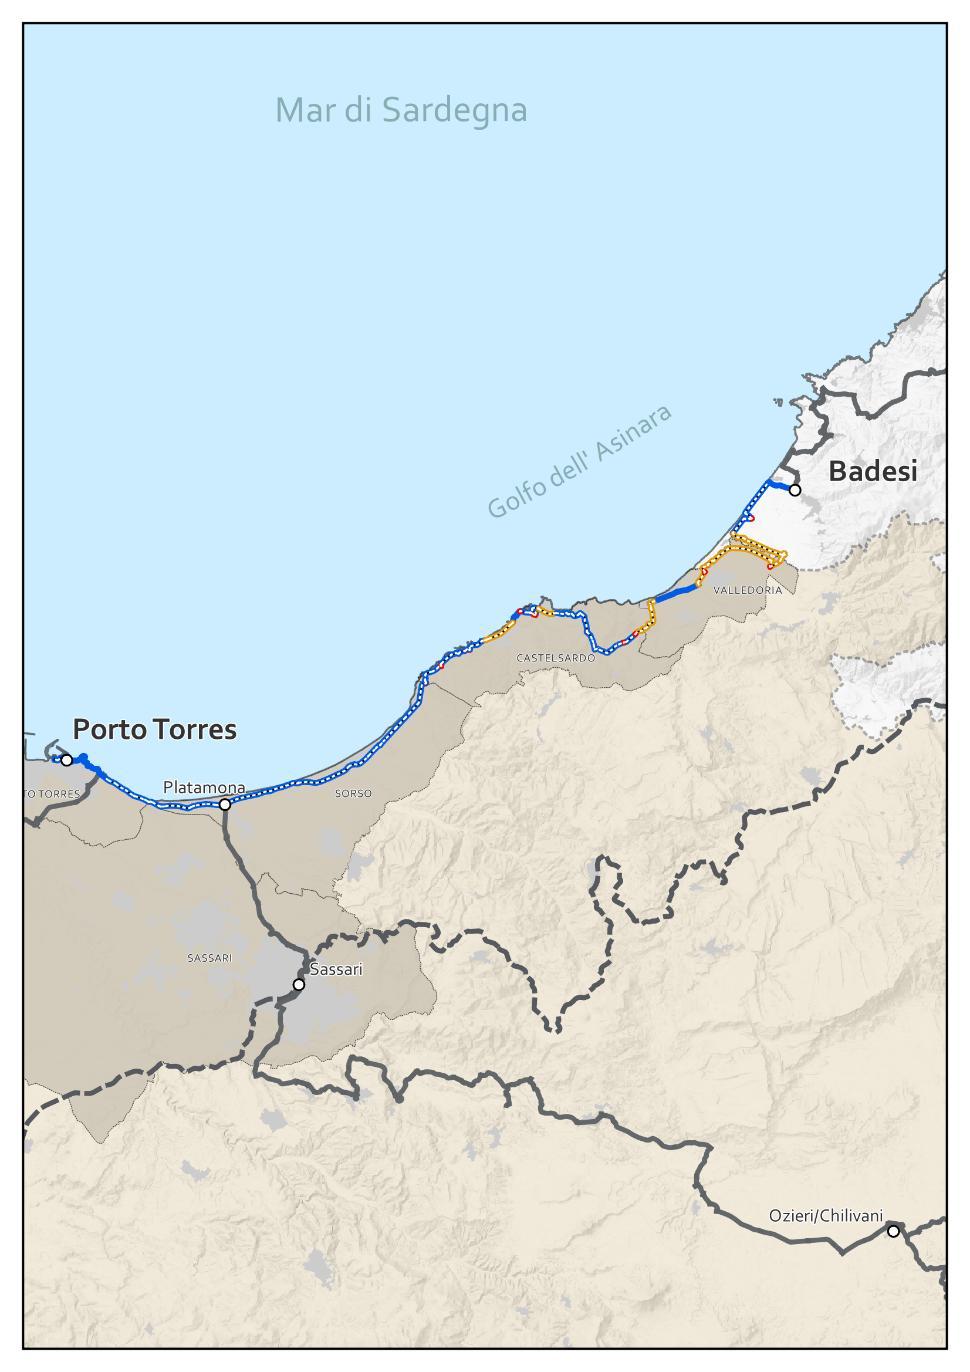 R18 - Porto Torres - Badesi Caratteristiche tecniche Tipologia di sede ciclabile 74% 24% 2% Pendenza 87% 11% 1.5% 0.